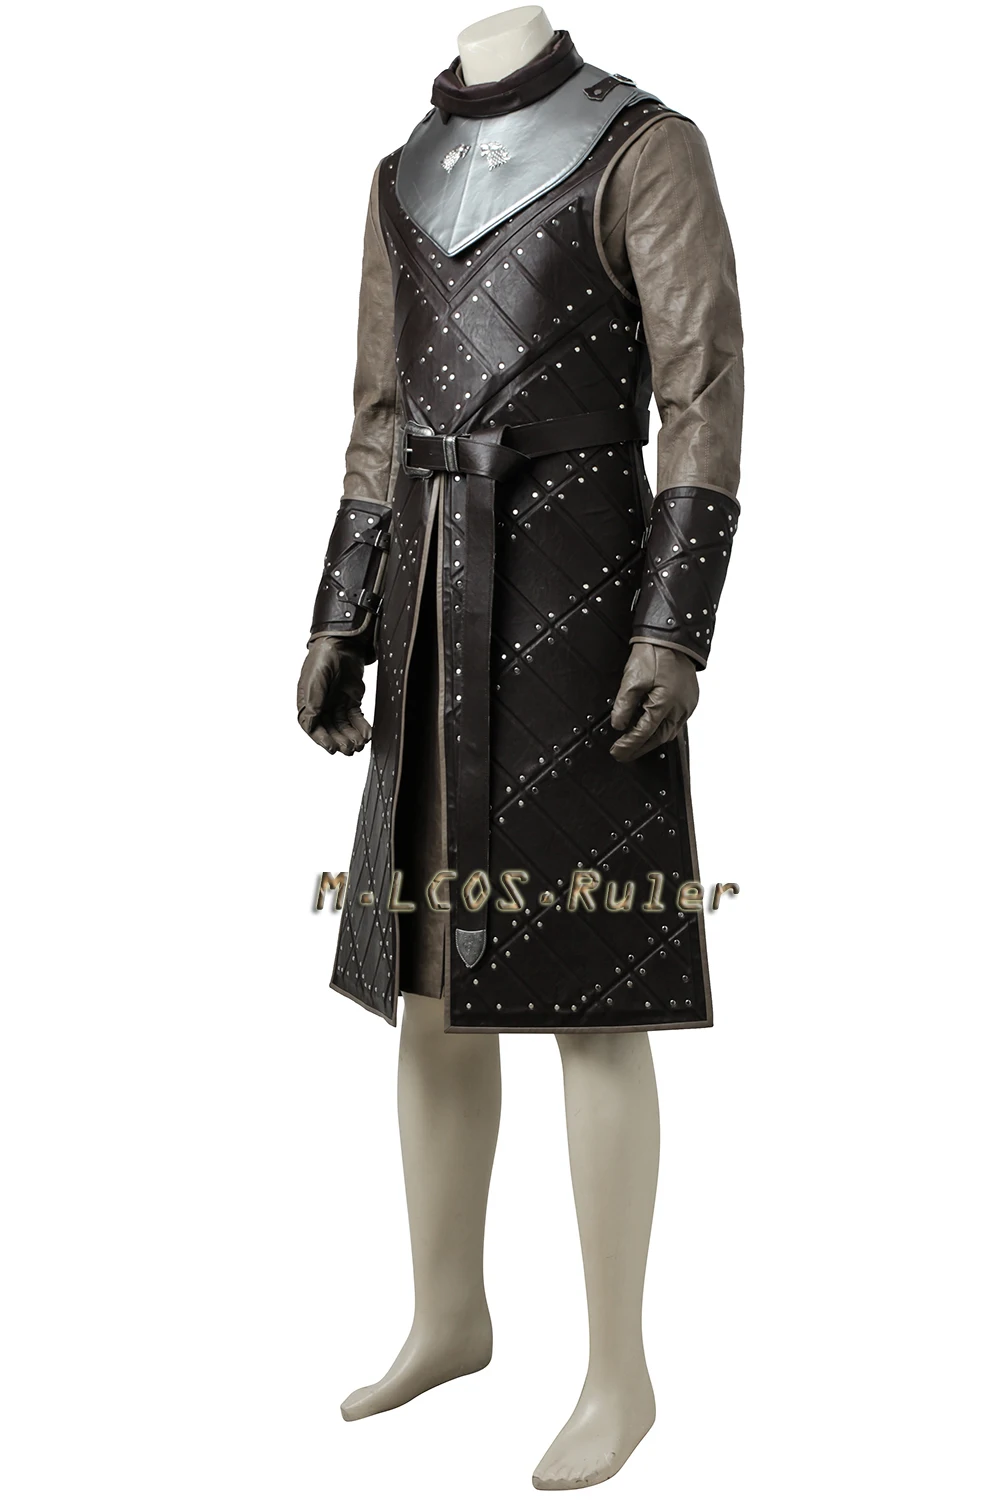 Игра престолов сезон 7 Джон Сноу костюм косплей наряд Хэллоуин Одежда Костюм модная Униформа на заказ Высокое качество